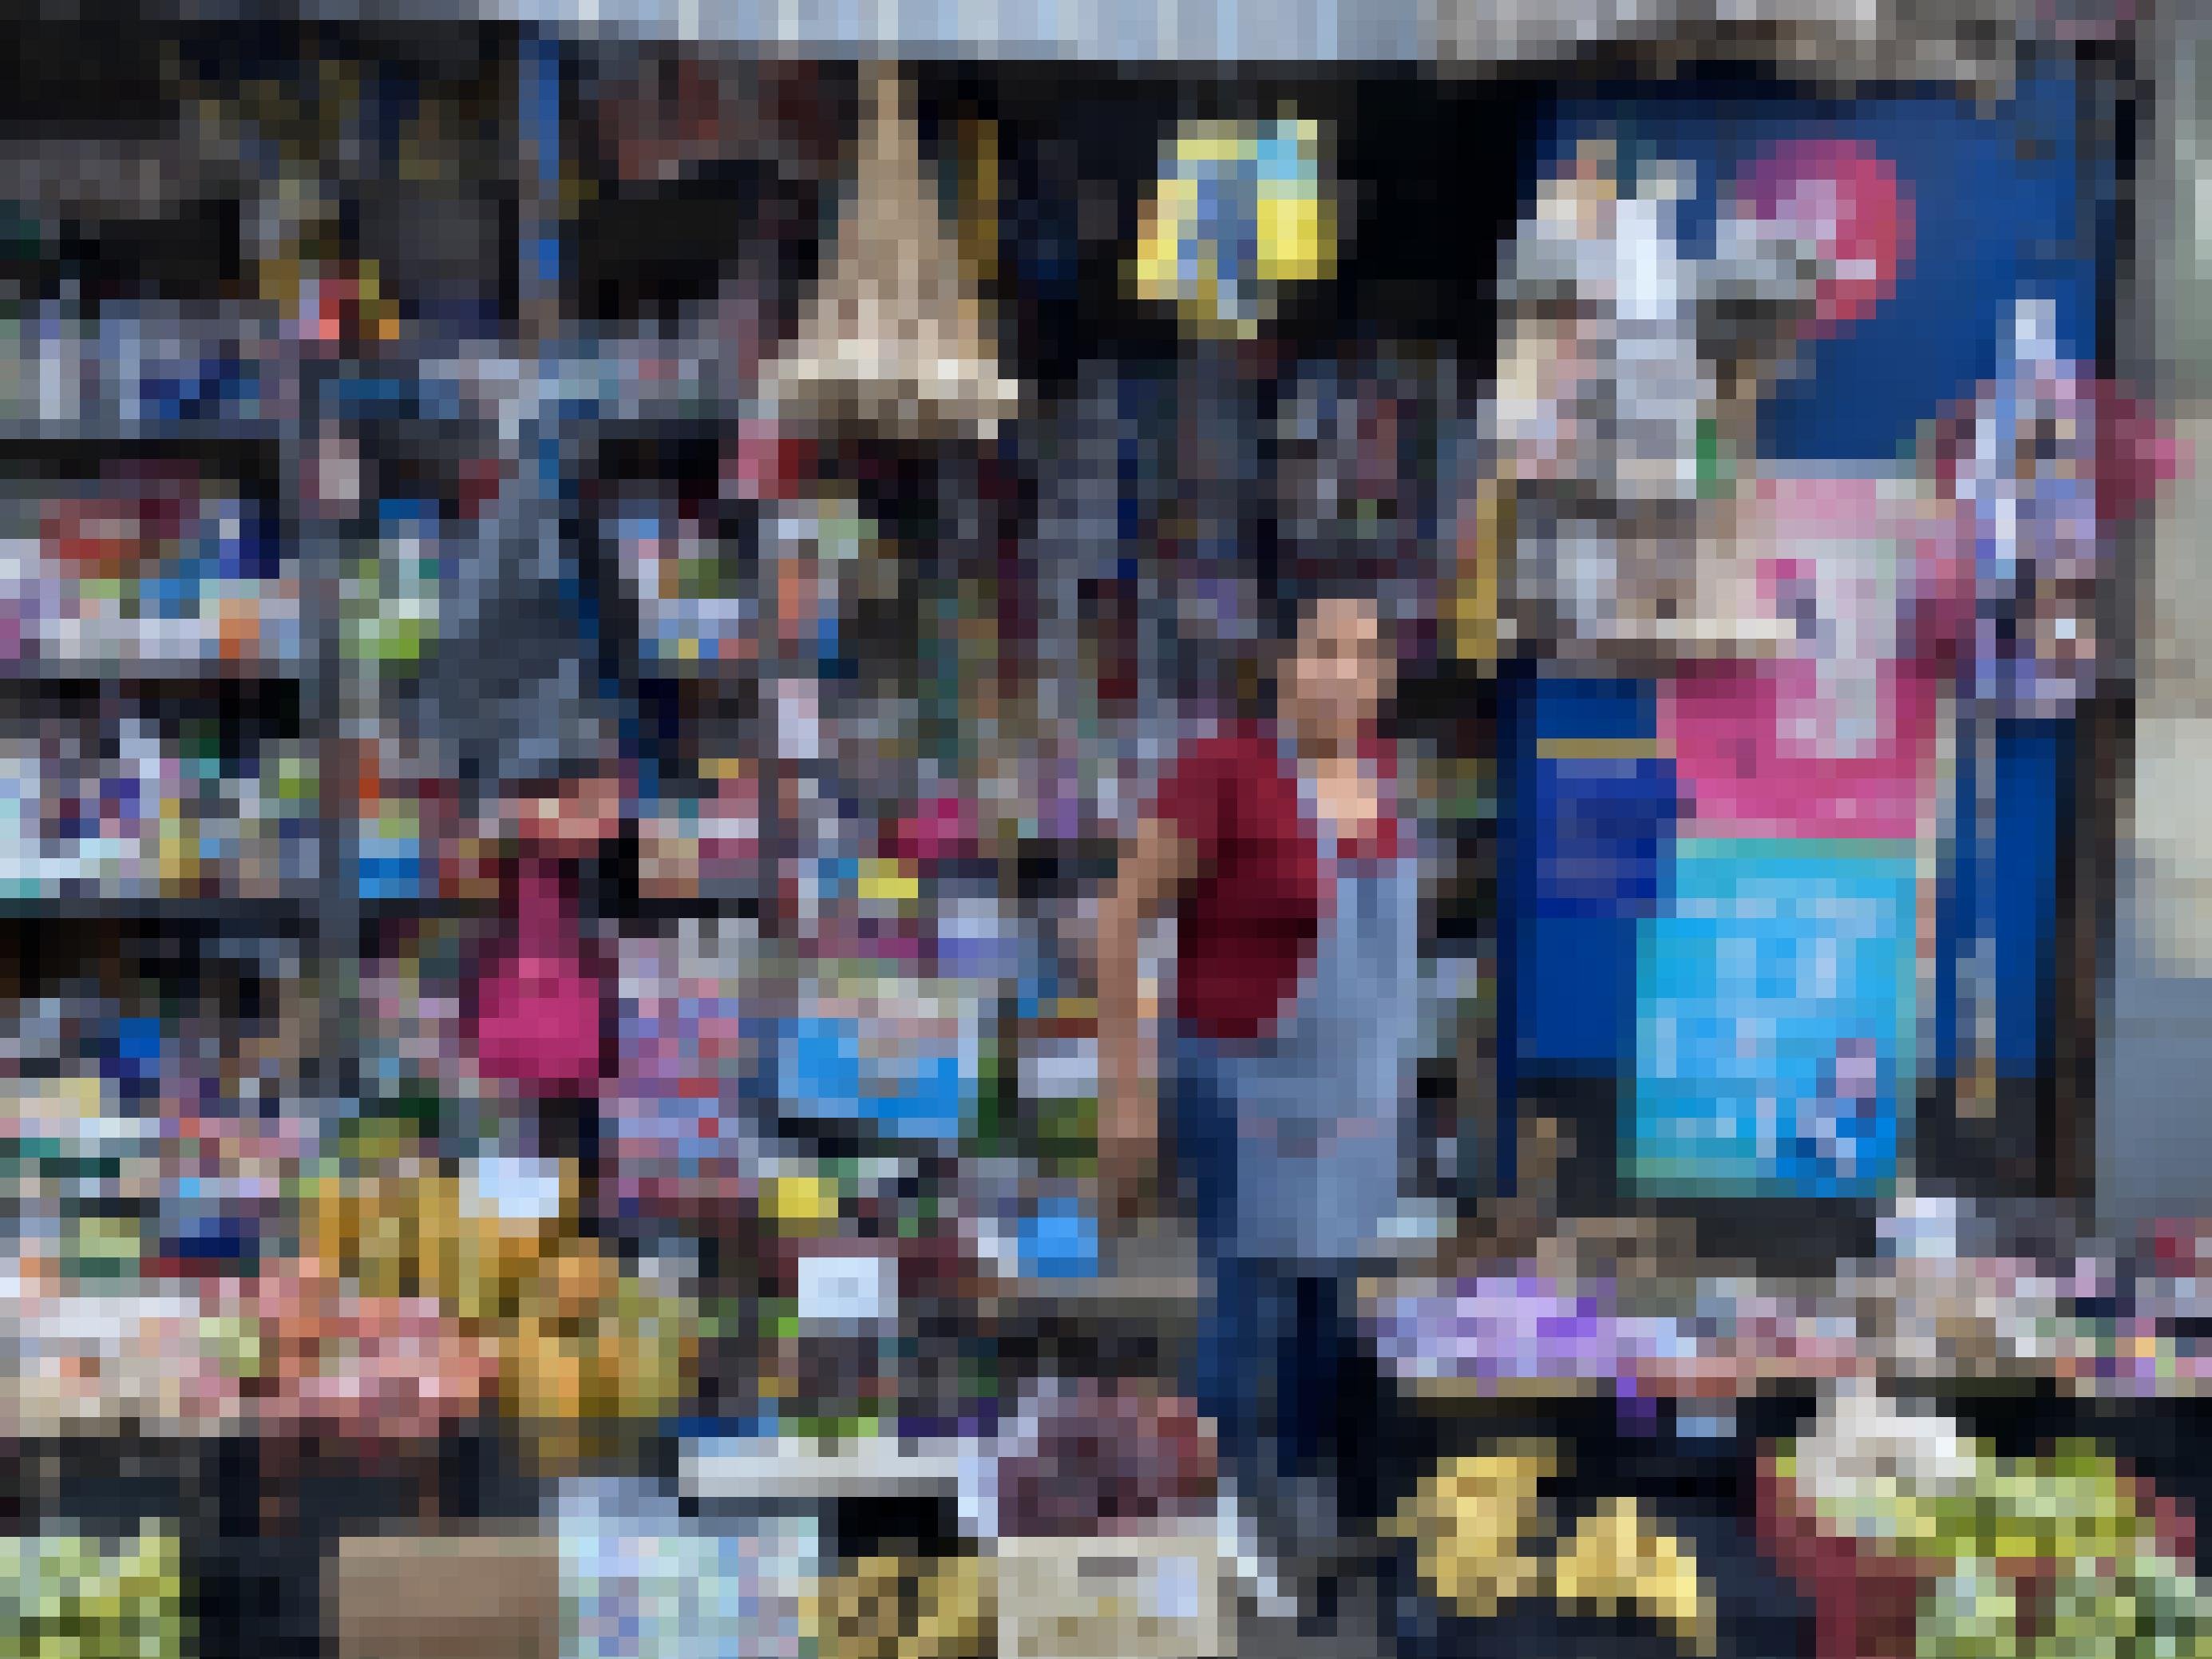 Eine Frau mit einer Schürze umgeben von einem bunten Durcheinander mit Waren aller Art, von Obst bis Medikamenten.